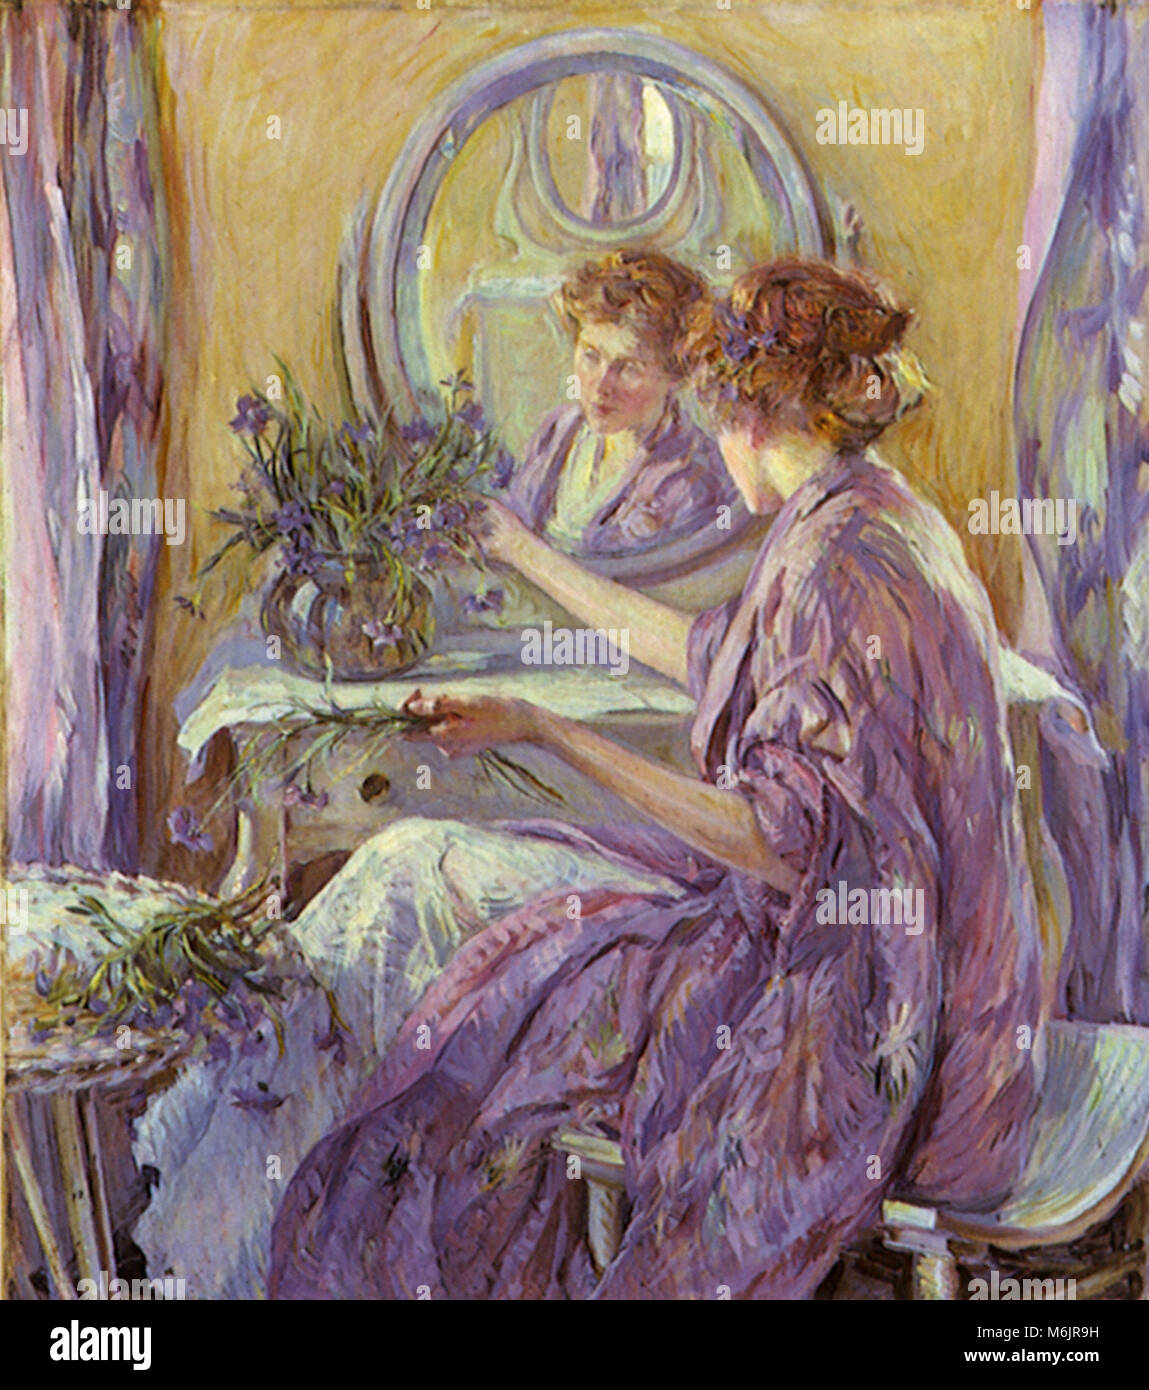 La Violetta kimono, Reid, Robert, 1910. Foto Stock